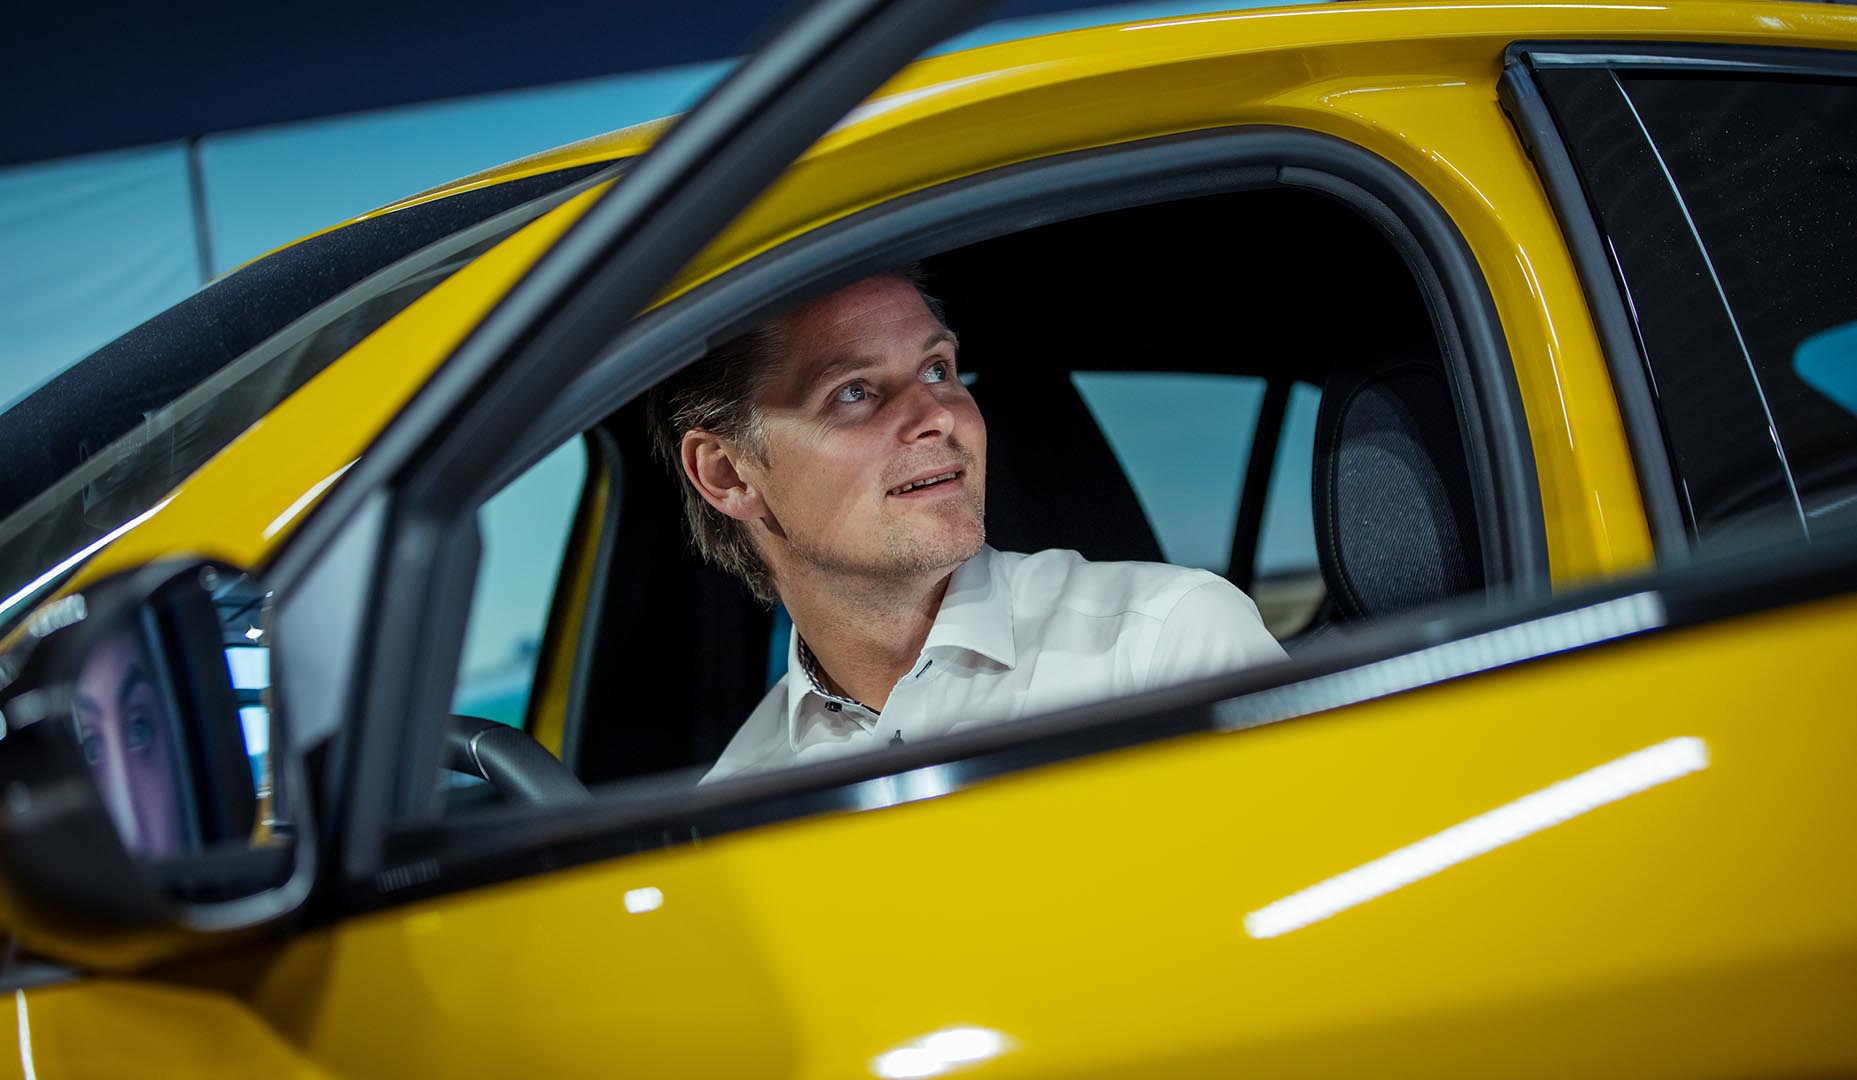 Mann sitter i en gul bil med døren åpen og kikker ut